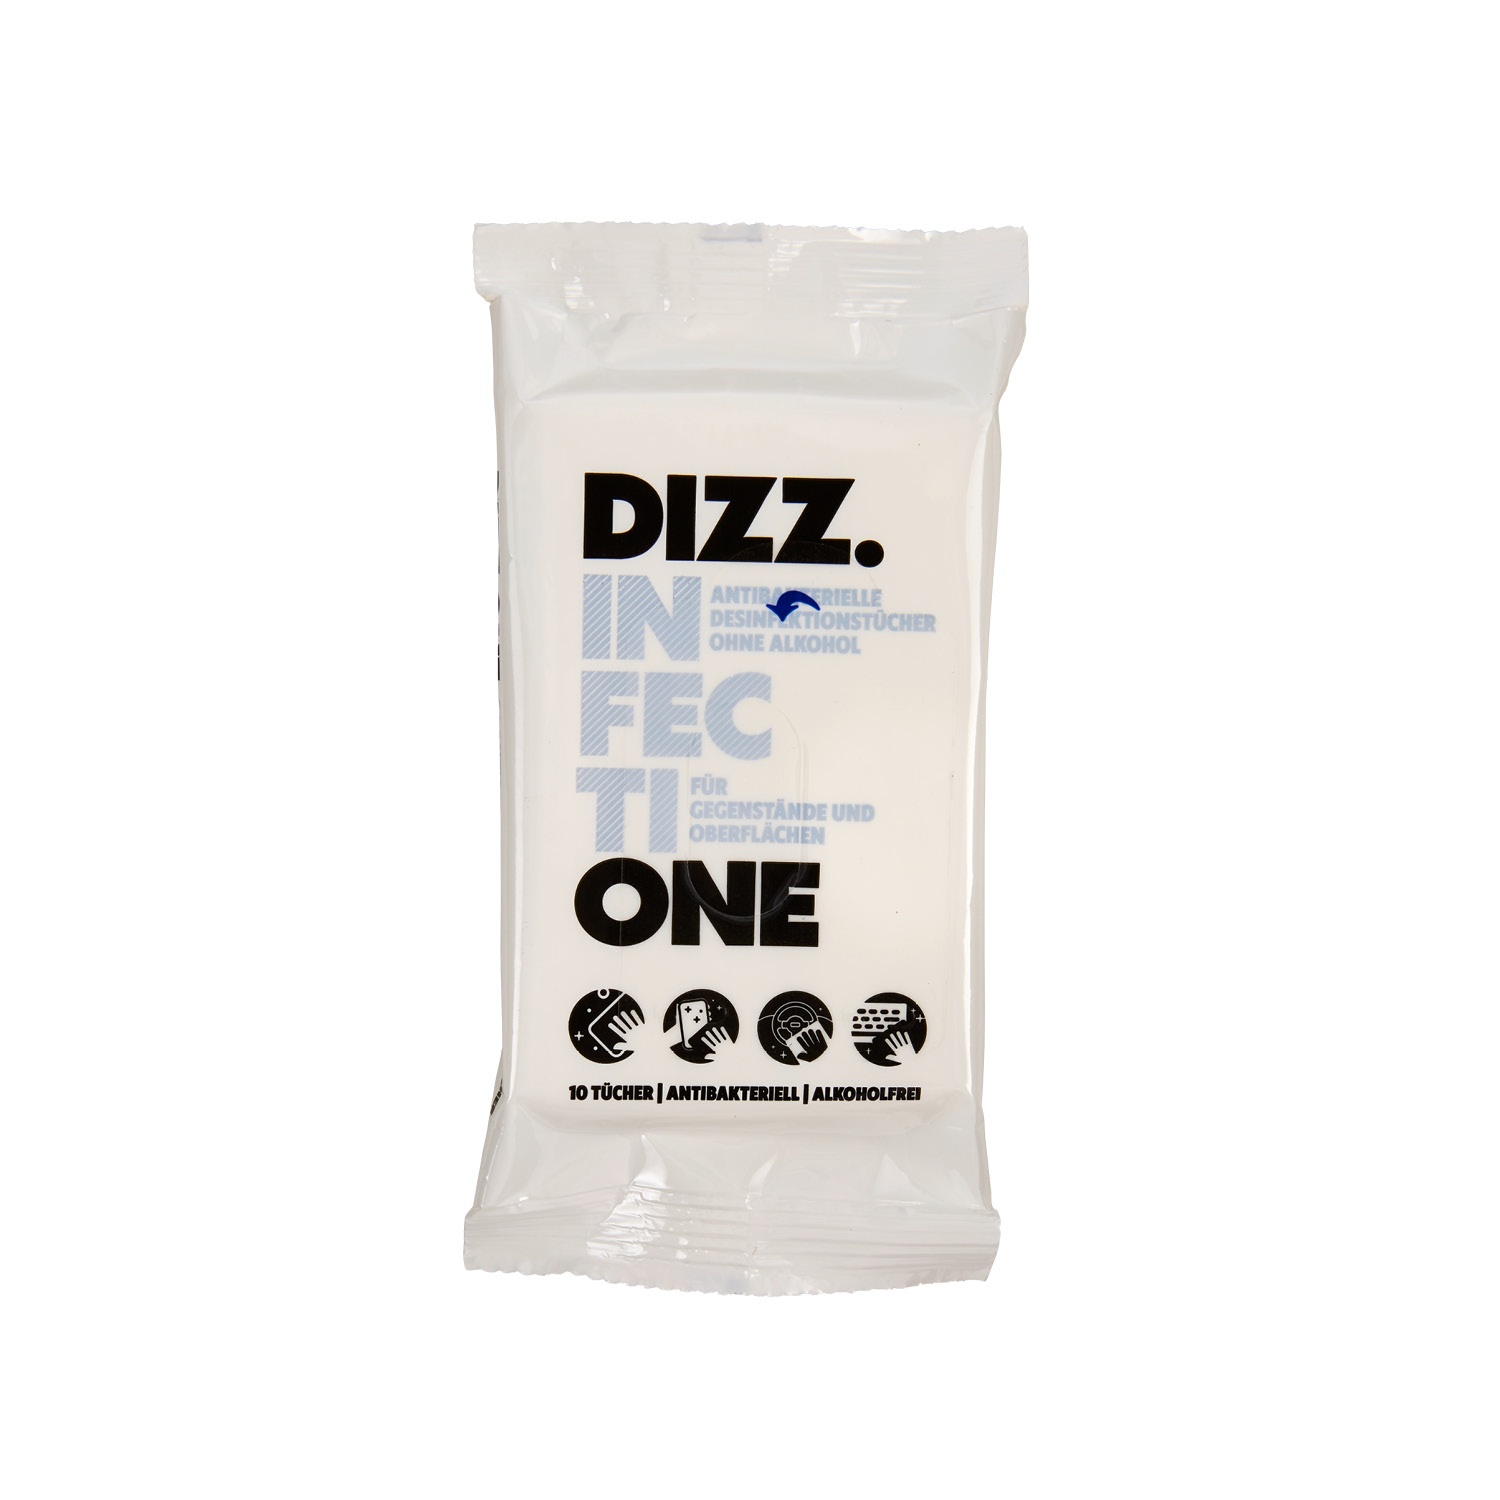 DIZZ.ONE Hygiene-Reiseset